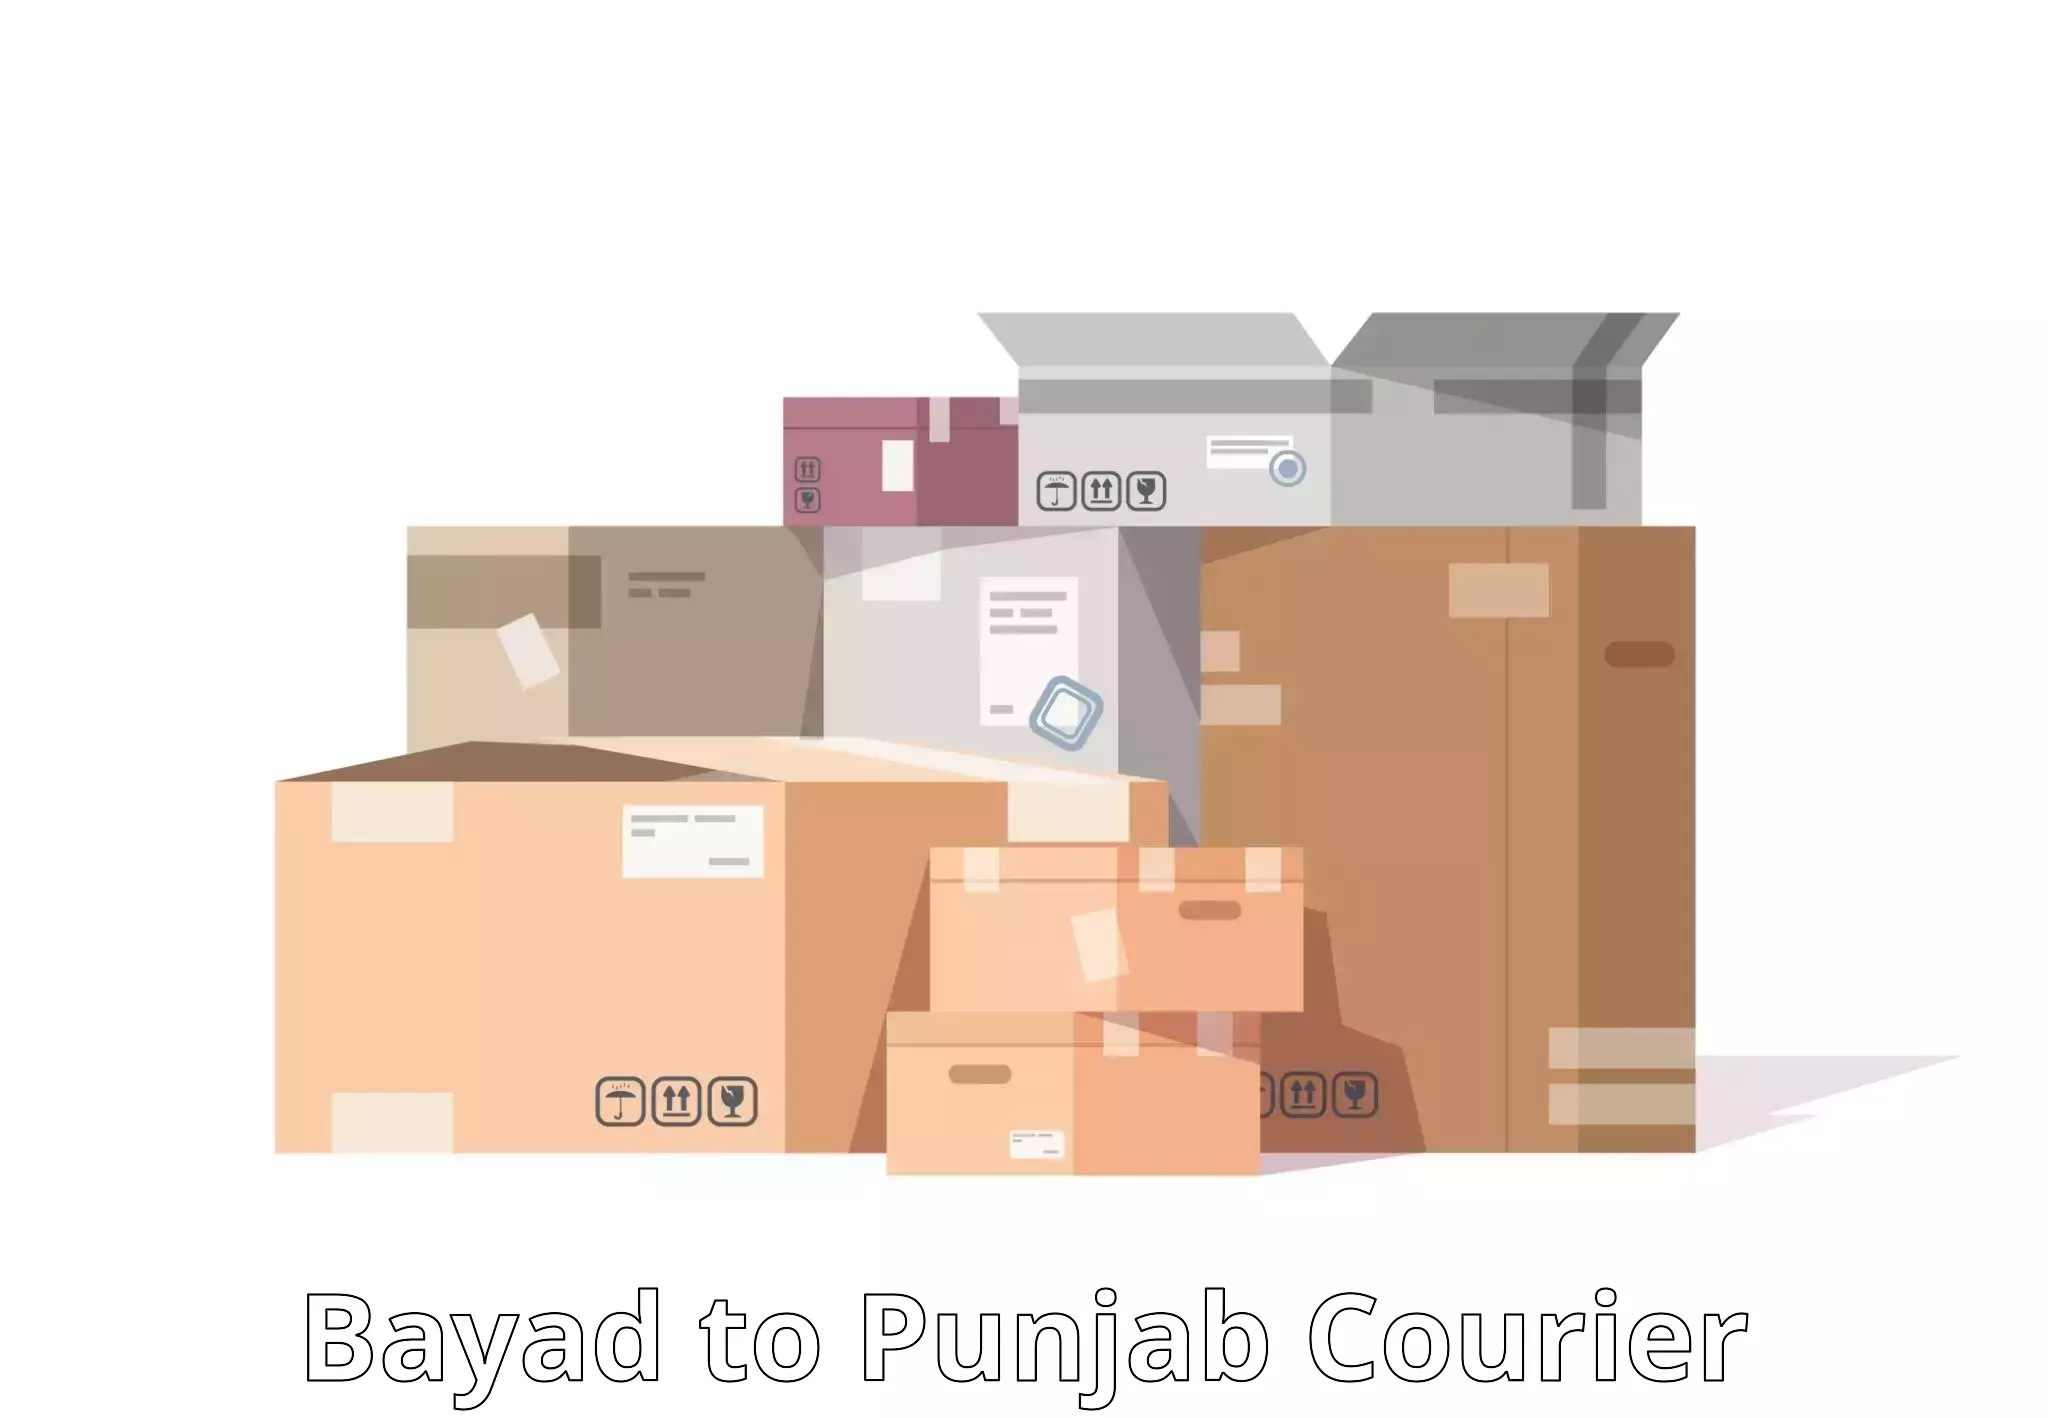 Express courier facilities Bayad to Jalandhar